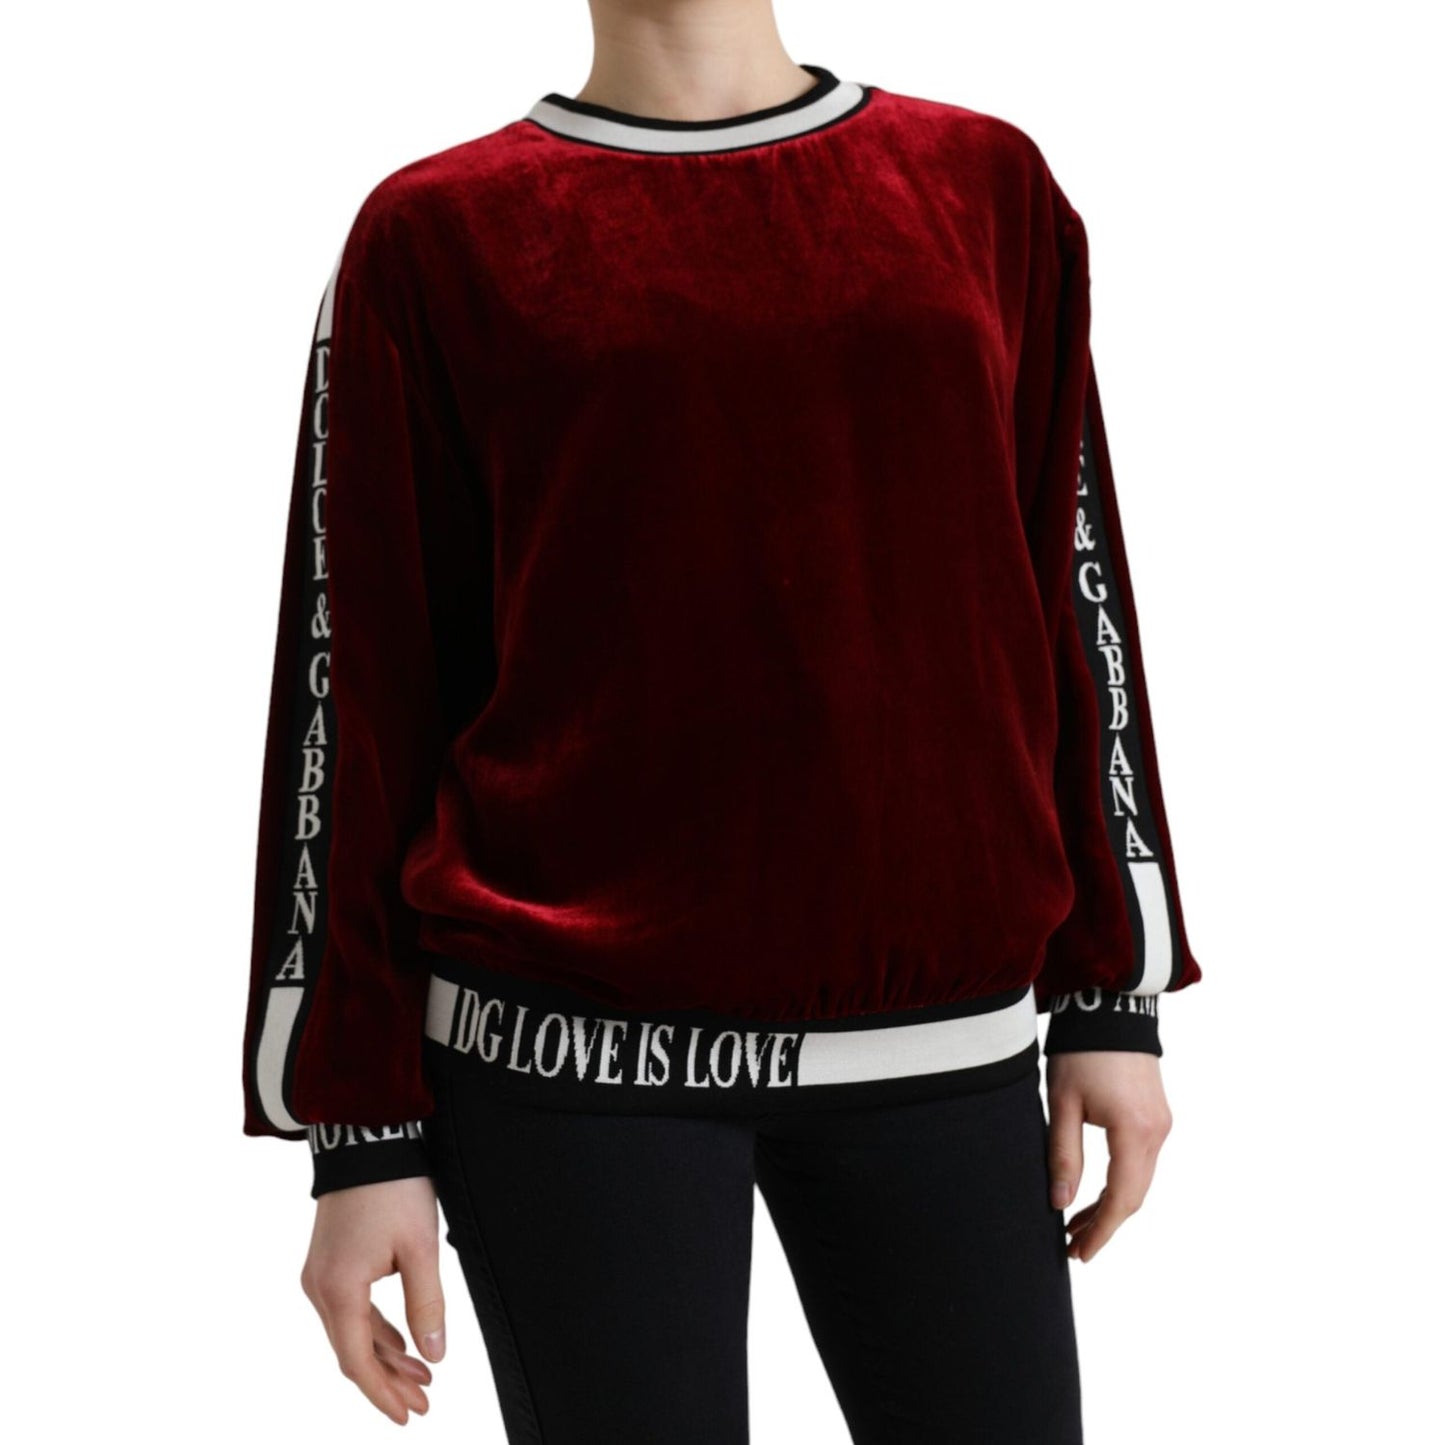 Dolce & Gabbana Elegant Bordeaux Silk-Blend Sweater bordeaux-velvet-crew-neck-pullover-sweater 465A3128-BG-AND-EBAY-scaled-fc3a4cd6-44b.jpg